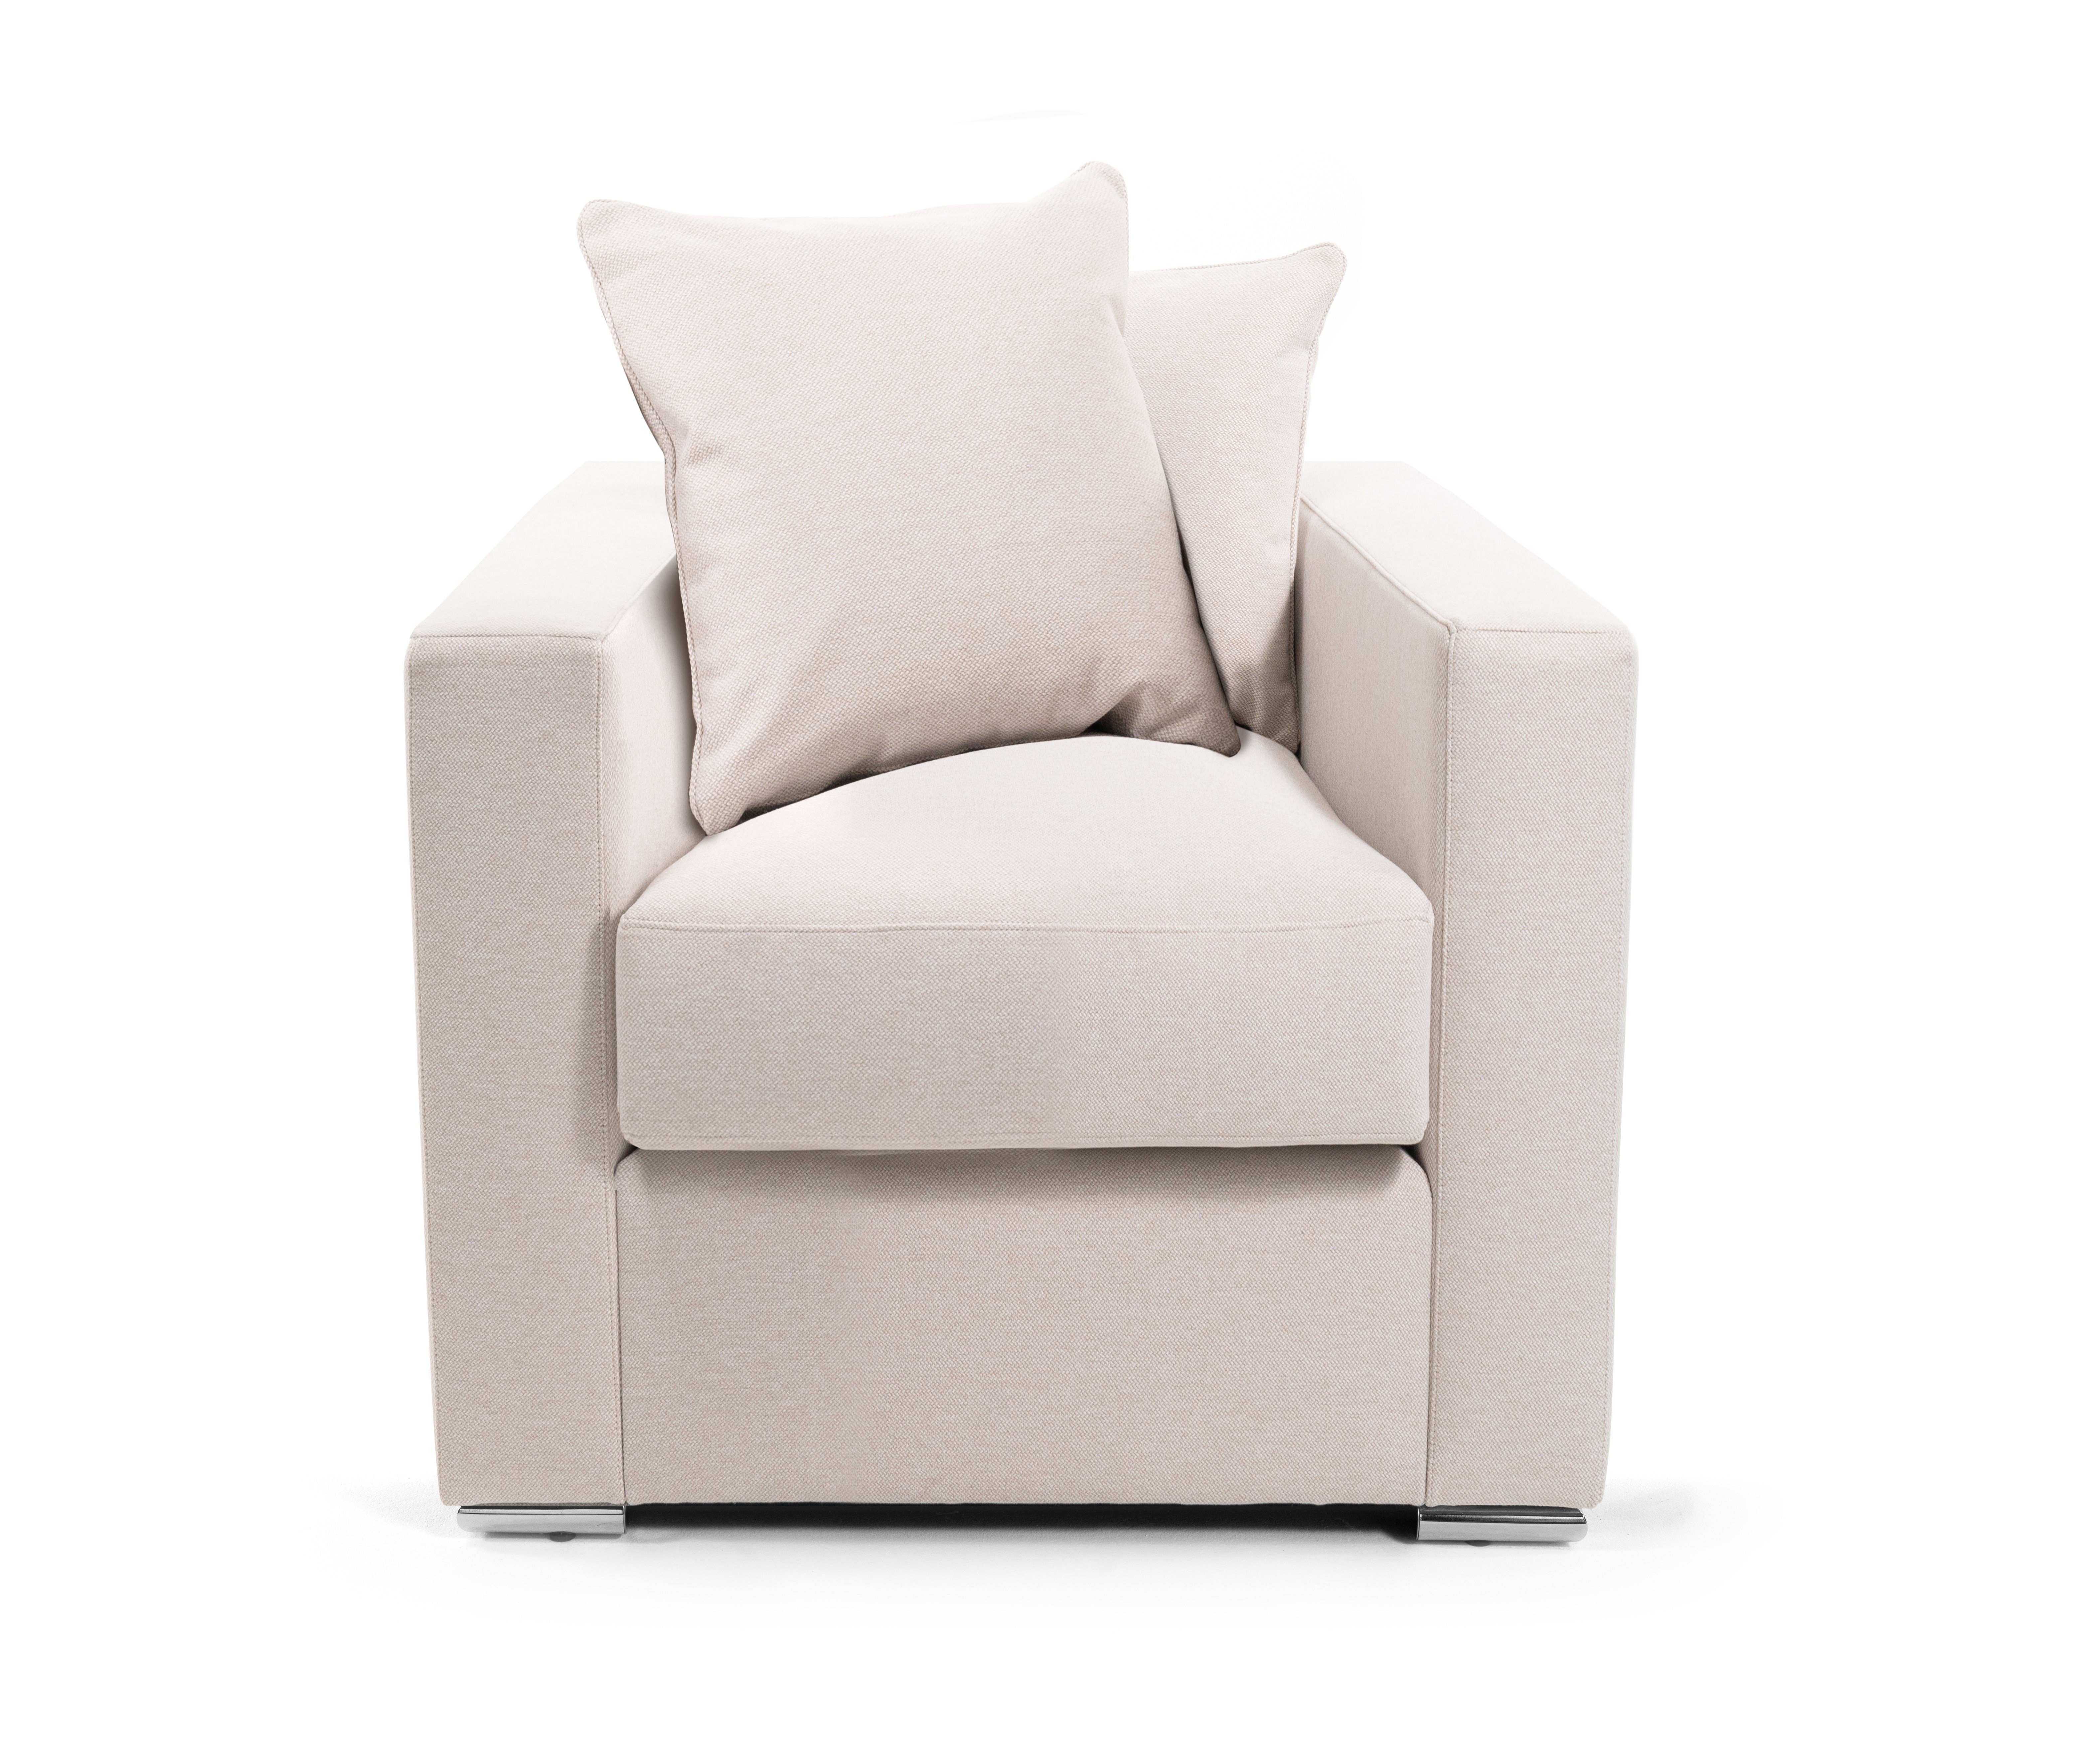 AMARIS Elements Cocktailsessel Sessel 'Paul' Loungesessel mit Samt od. Stoff-Bezug Wohnzimmer 80x85cm, Die perfekte Ergänzung zu unseren Sofas Beige/Greige (Wolloptik)